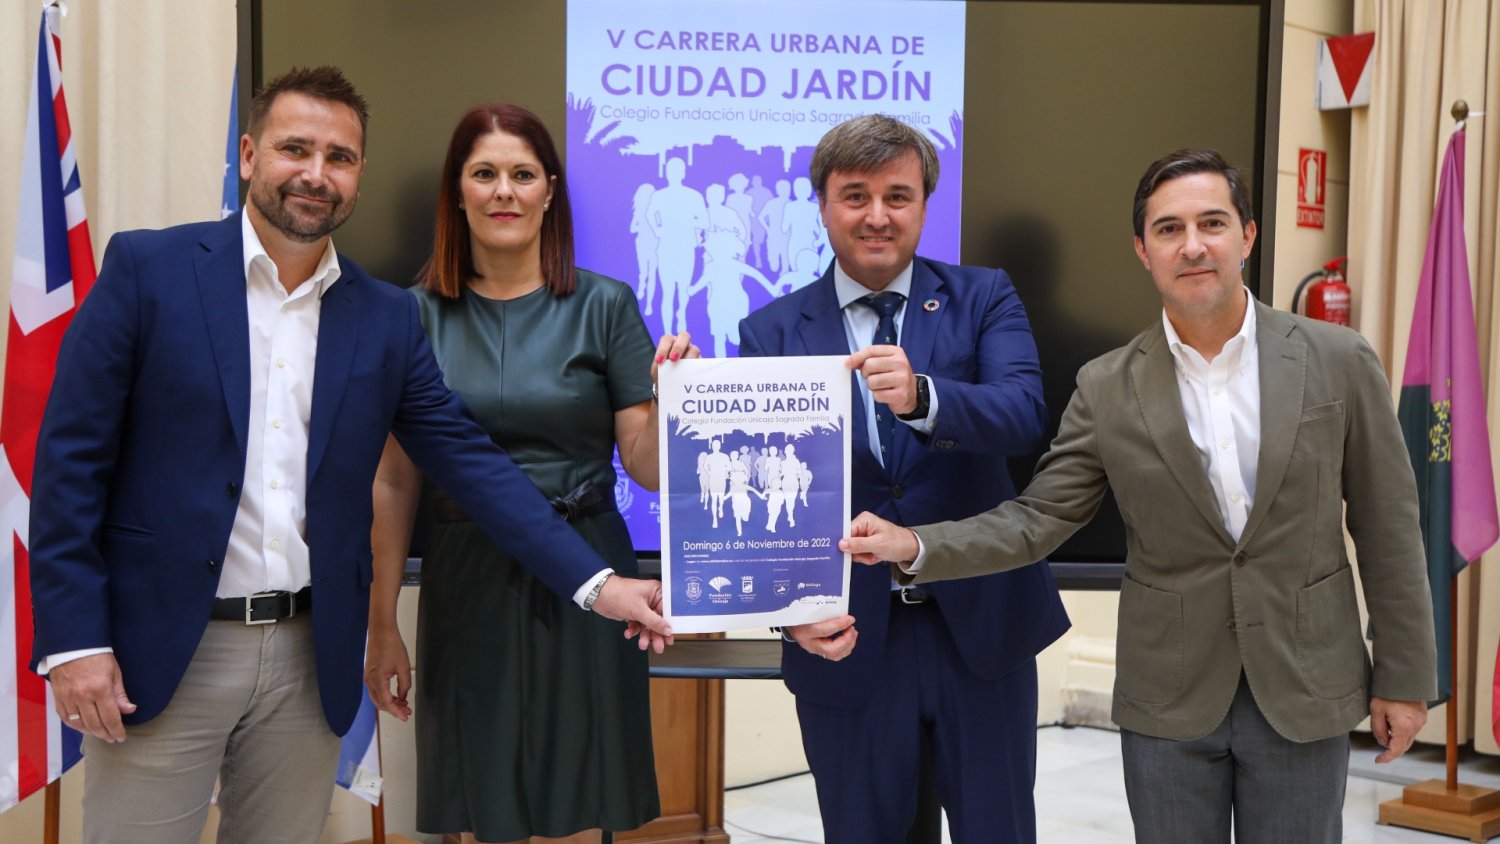 La carrera Sagrada Familia de Ciudad Jardín alcanza su quinta edición el 6 de noviembre